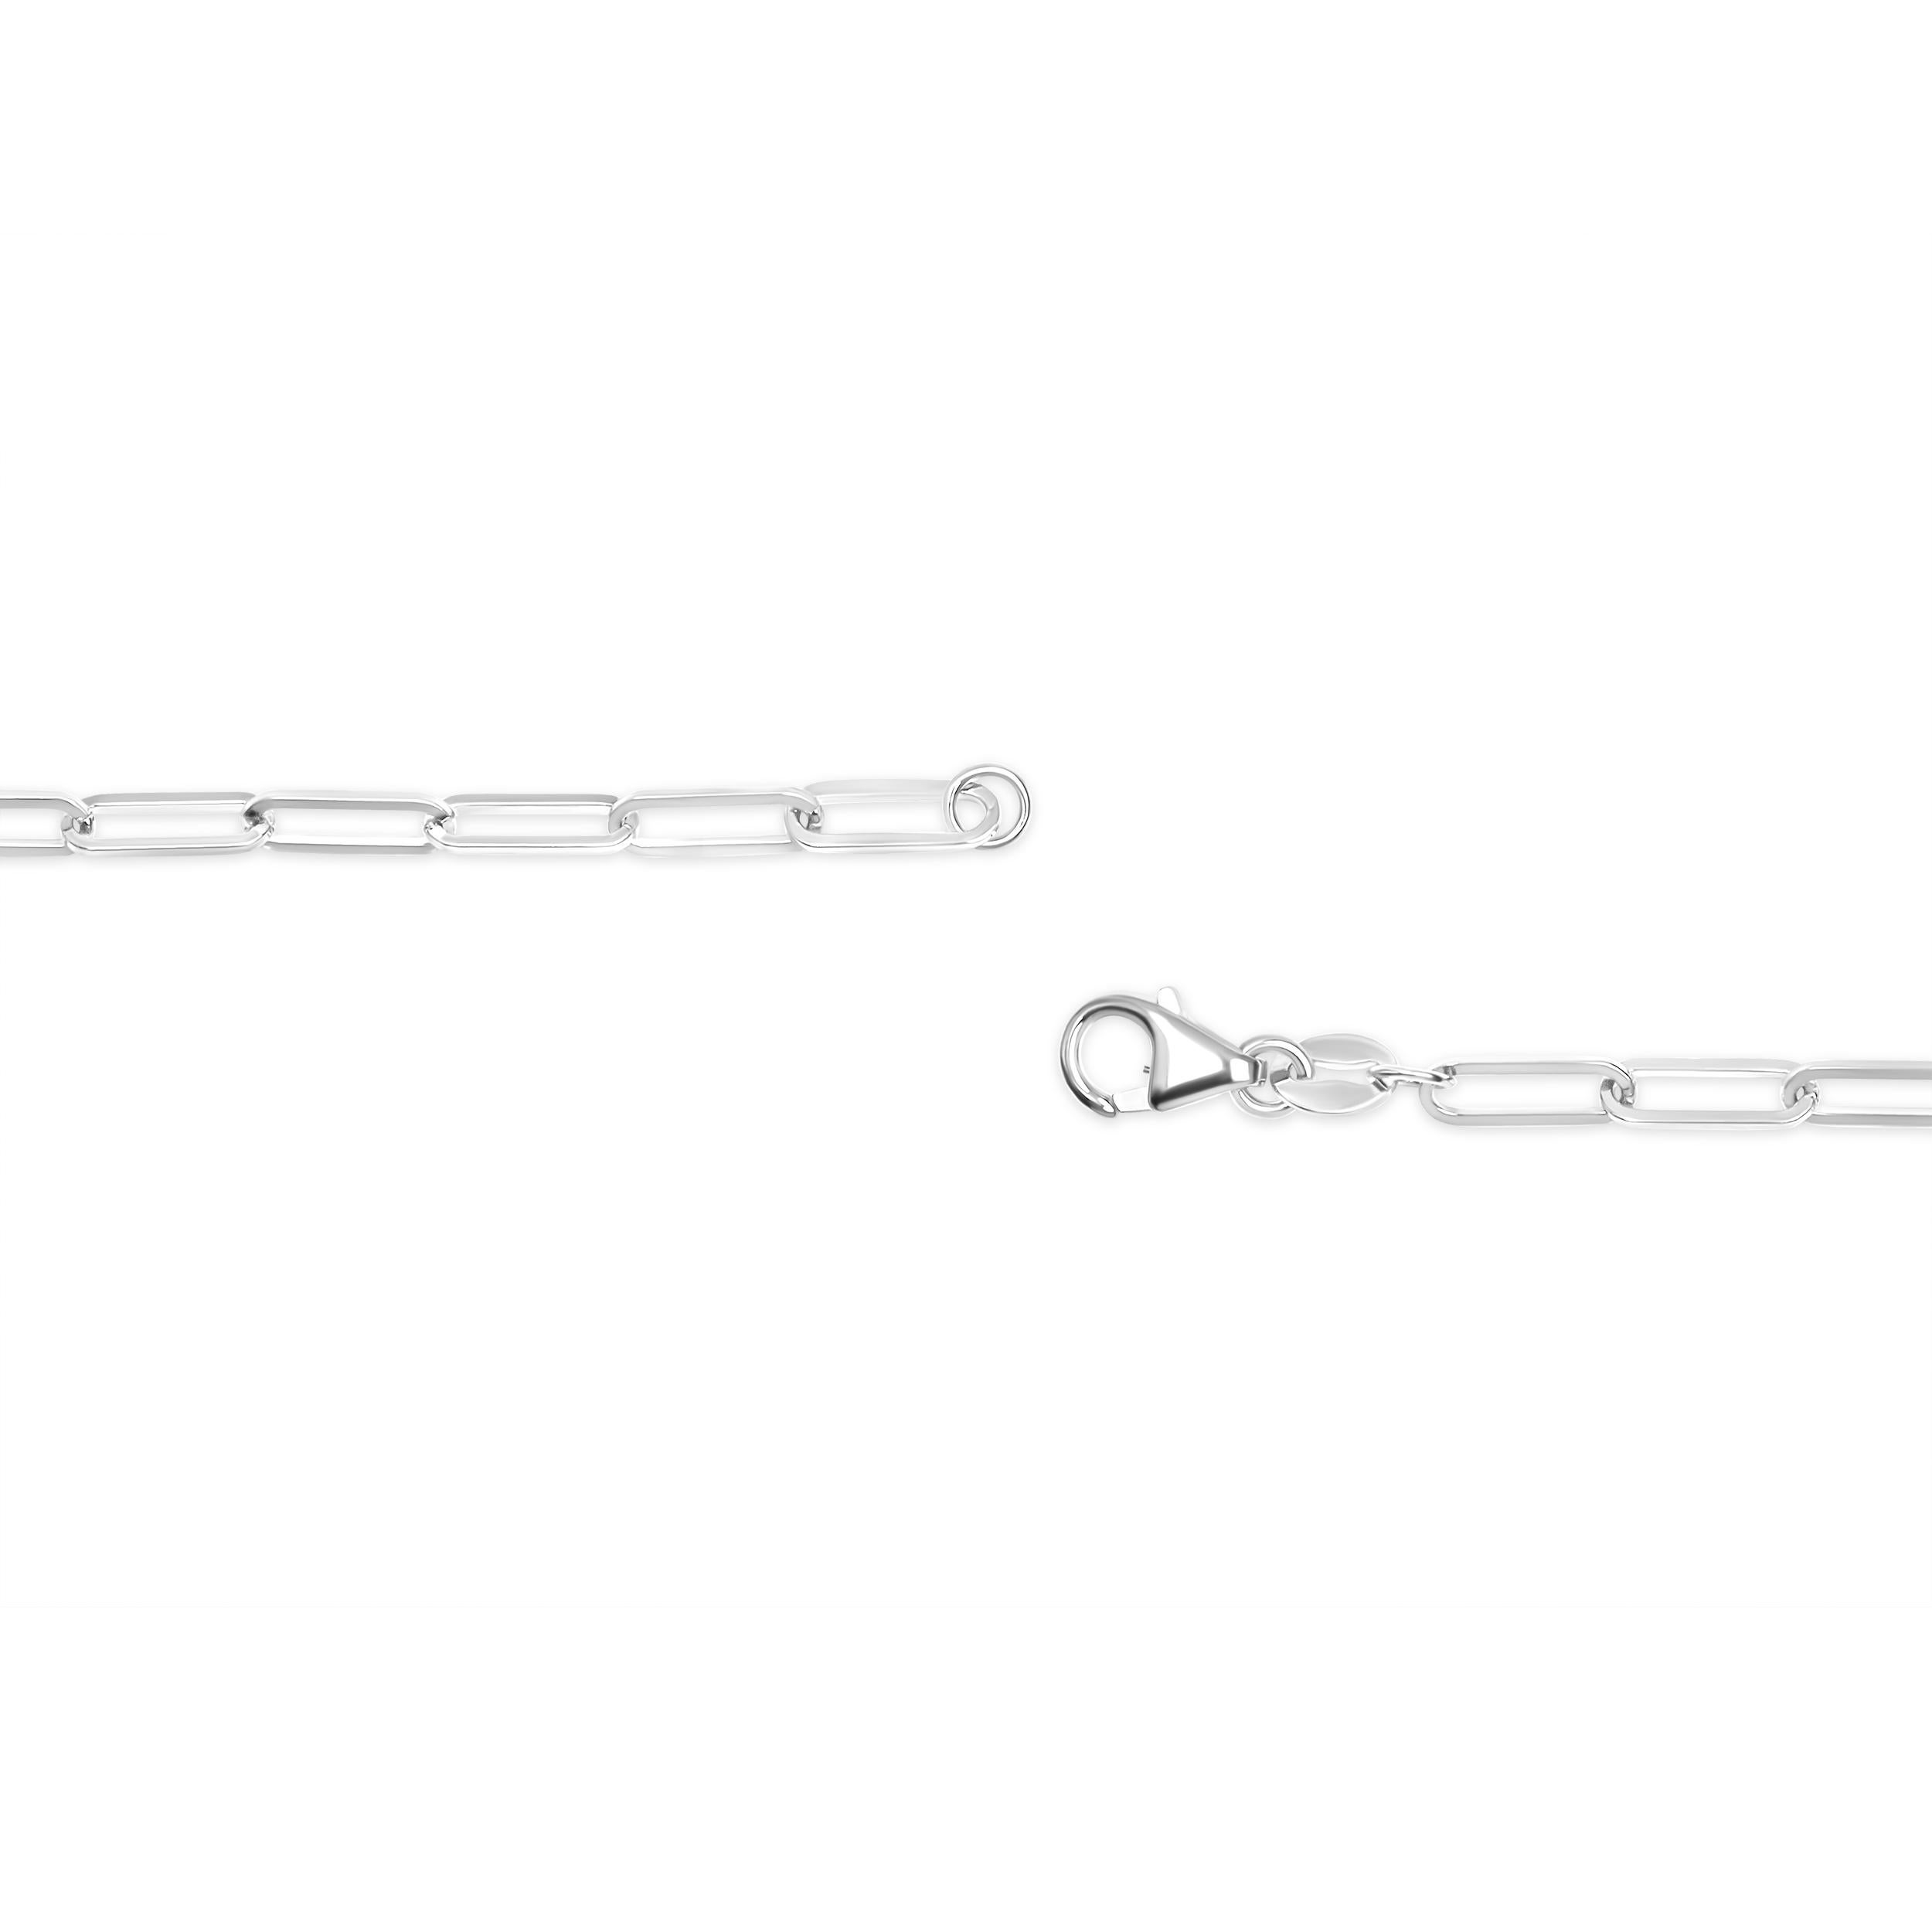 Chef-d'œuvre intemporel, ce collier exquis à chaîne de trombones en or blanc 14 carats est un mélange captivant d'élégance et de polyvalence. Fabriquée avec une attention méticuleuse aux détails, cette chaîne unisexe présente une largeur de 2,5 mm